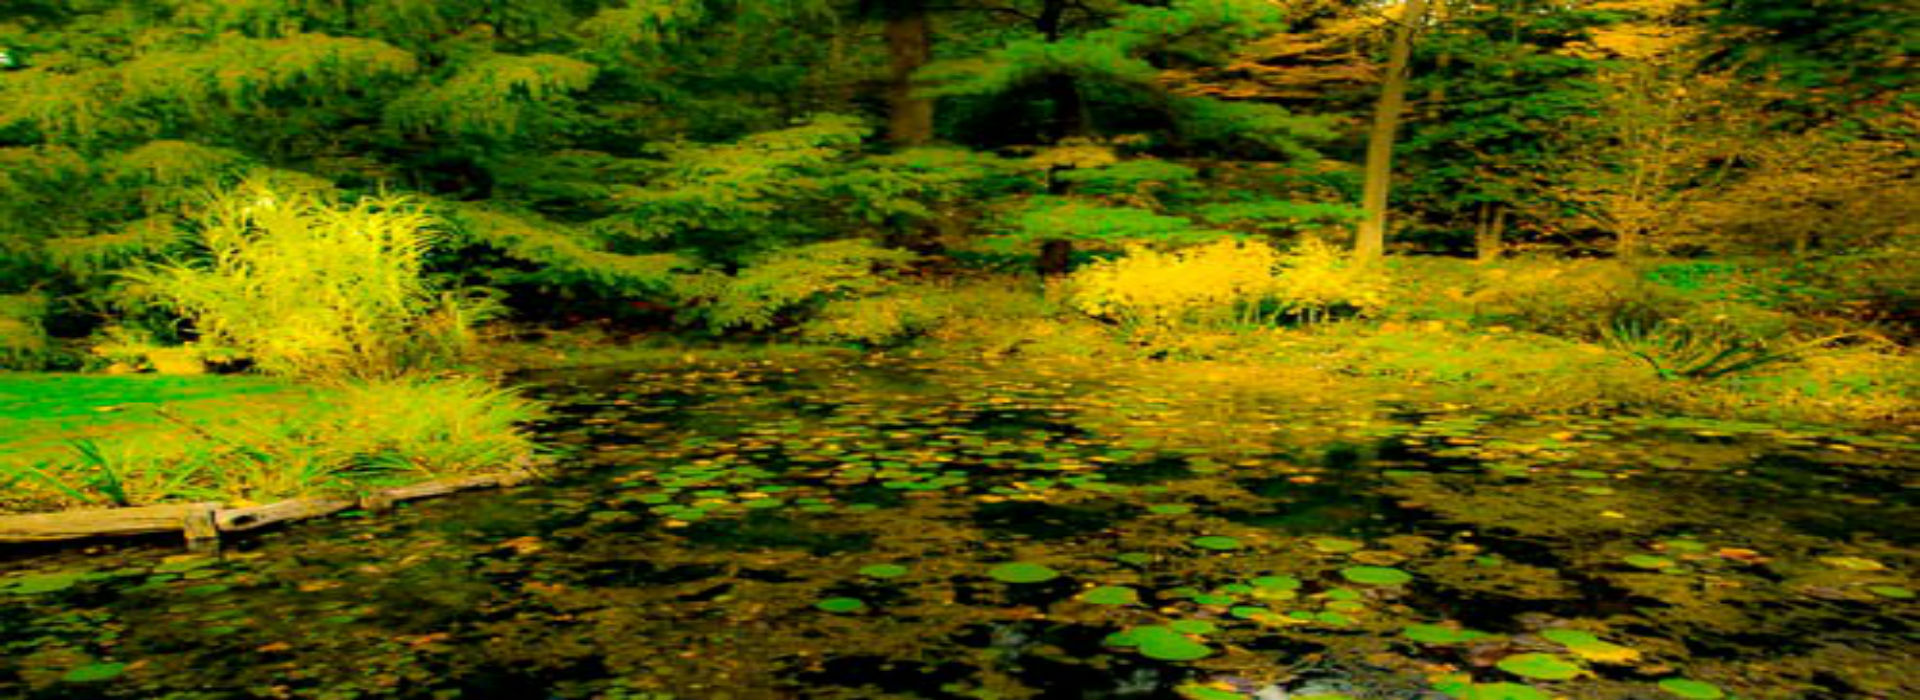 WEBSITE - Water Lillies - Buck Garden